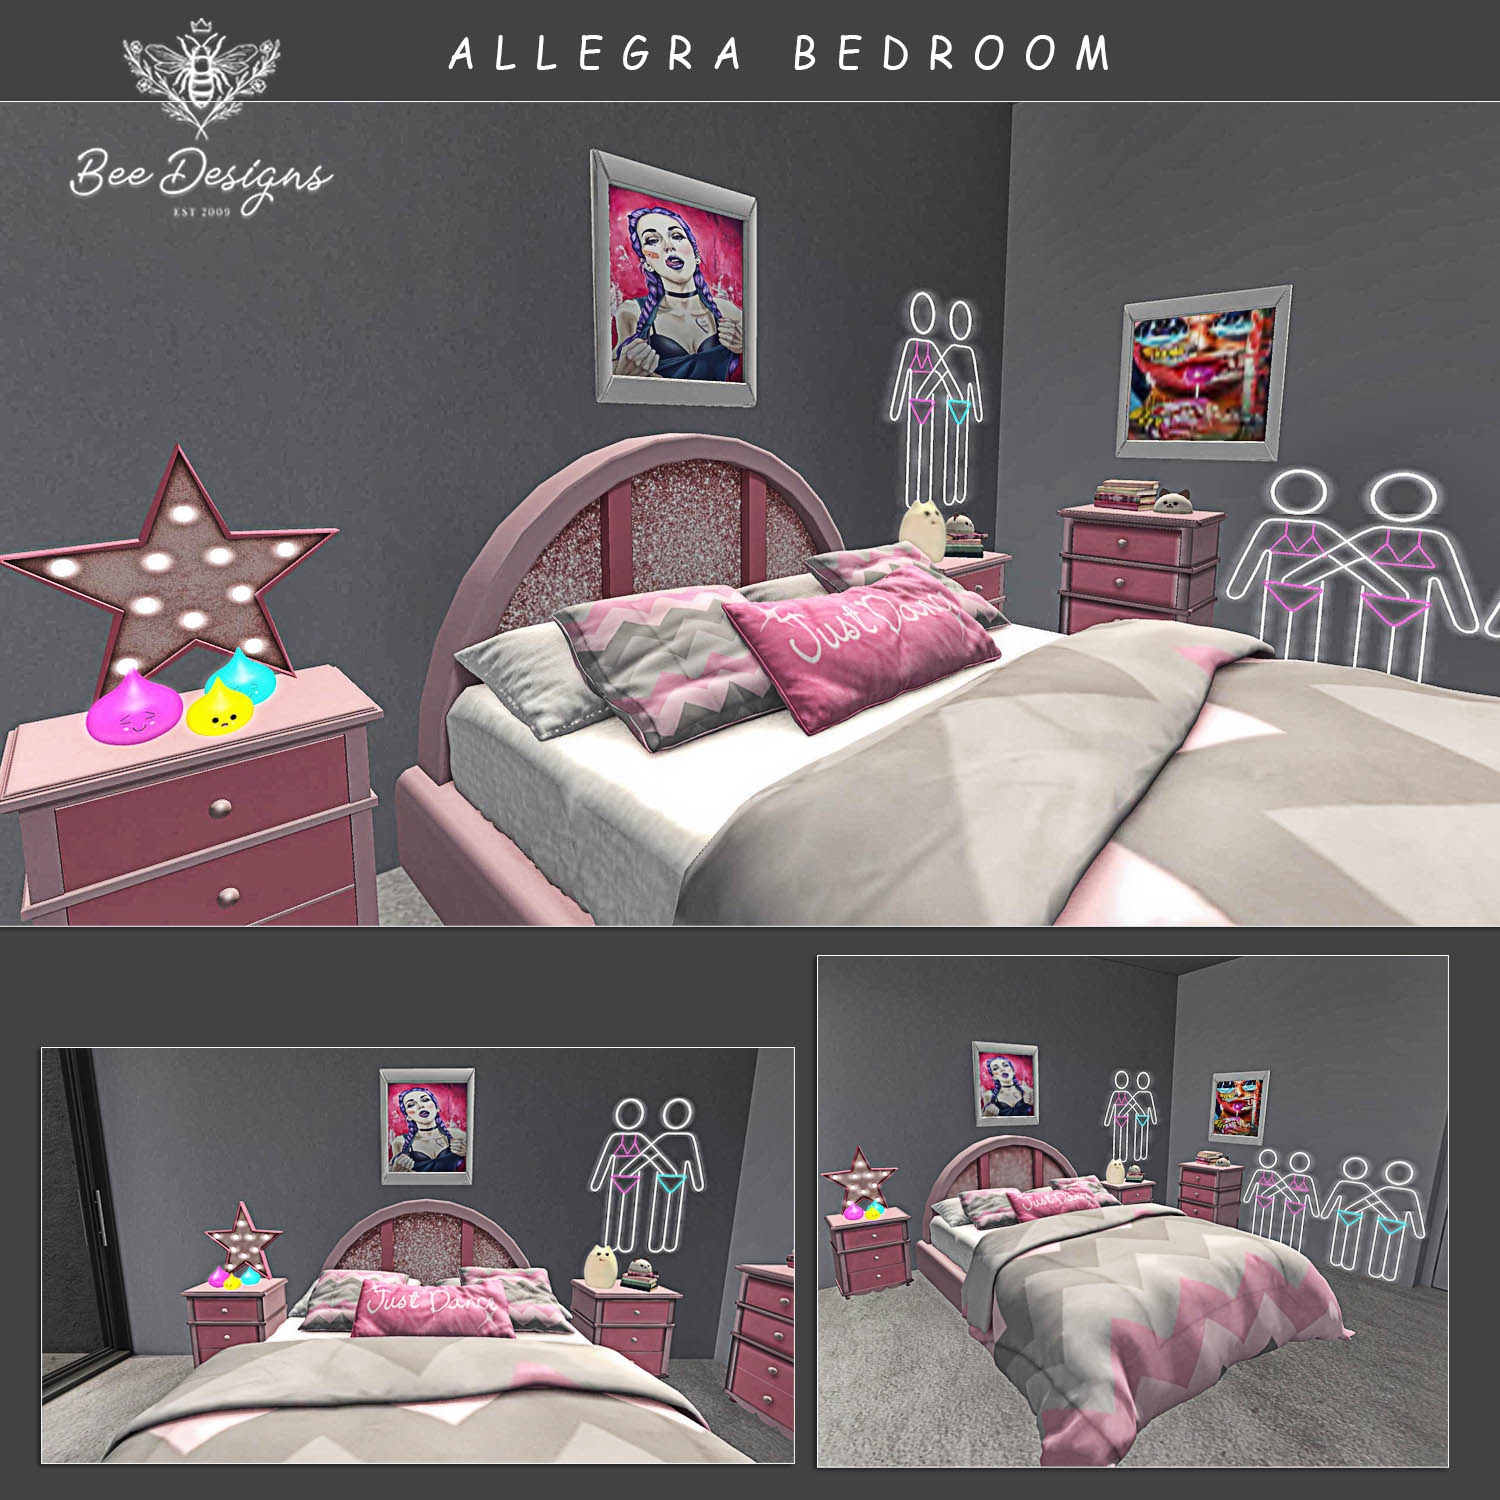 Bee Designs – Allegra Bedroom